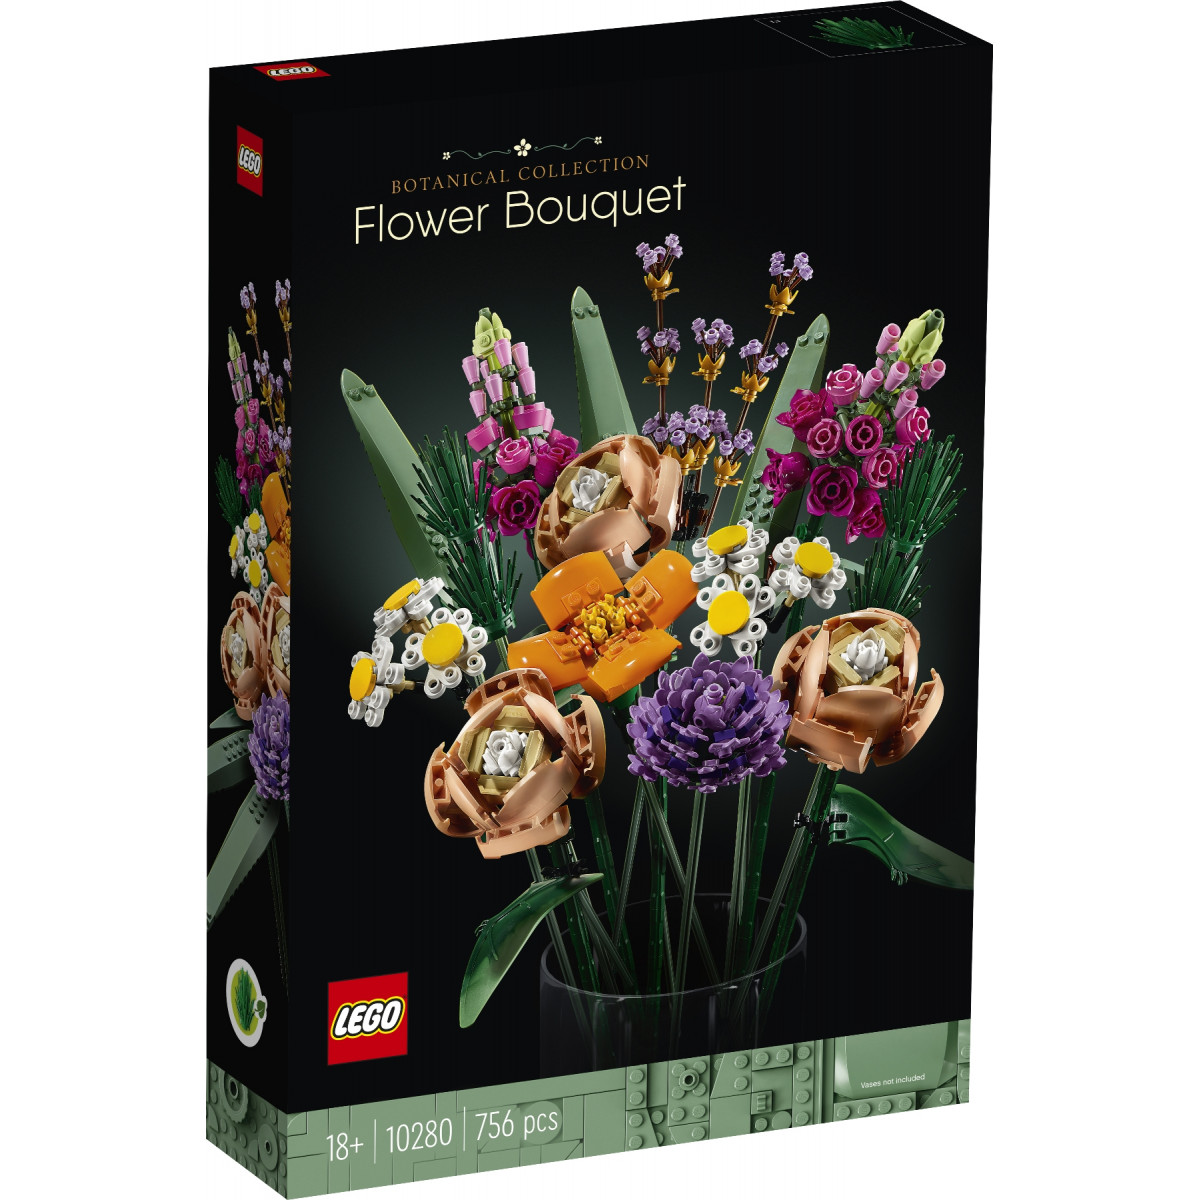 LEGO Creator Expert Flower Bouquet - 10280